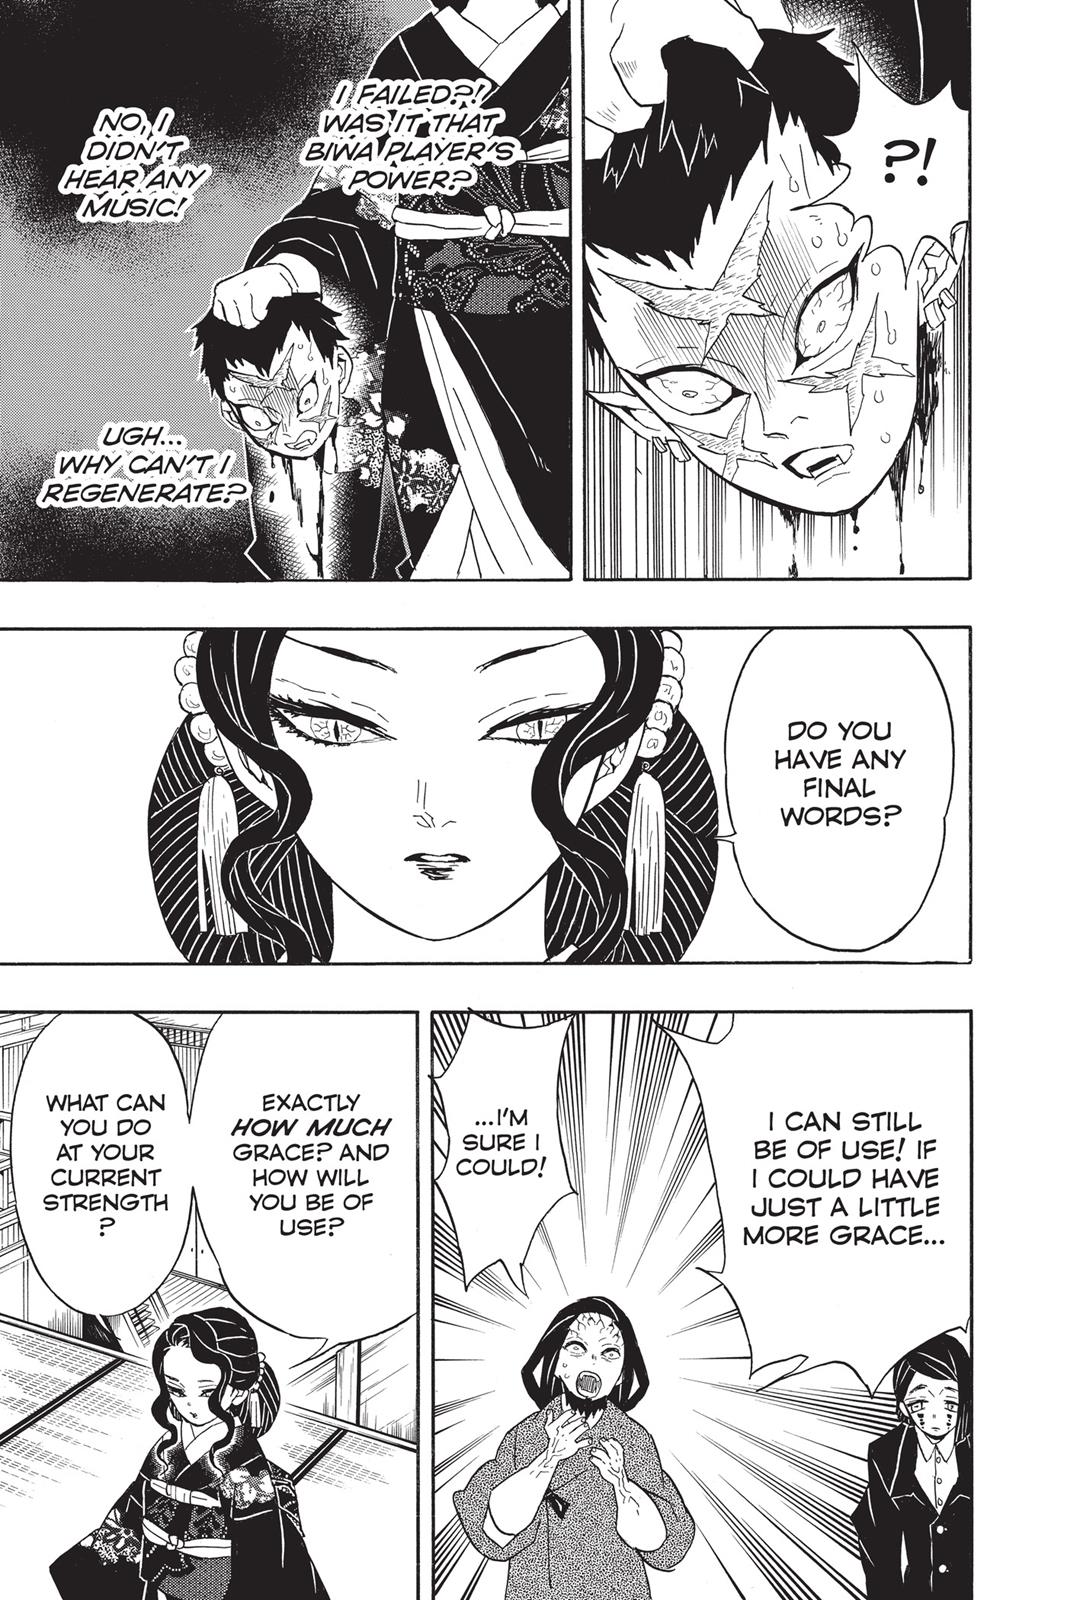 Demon Slayer Manga Manga Chapter - 52 - image 4